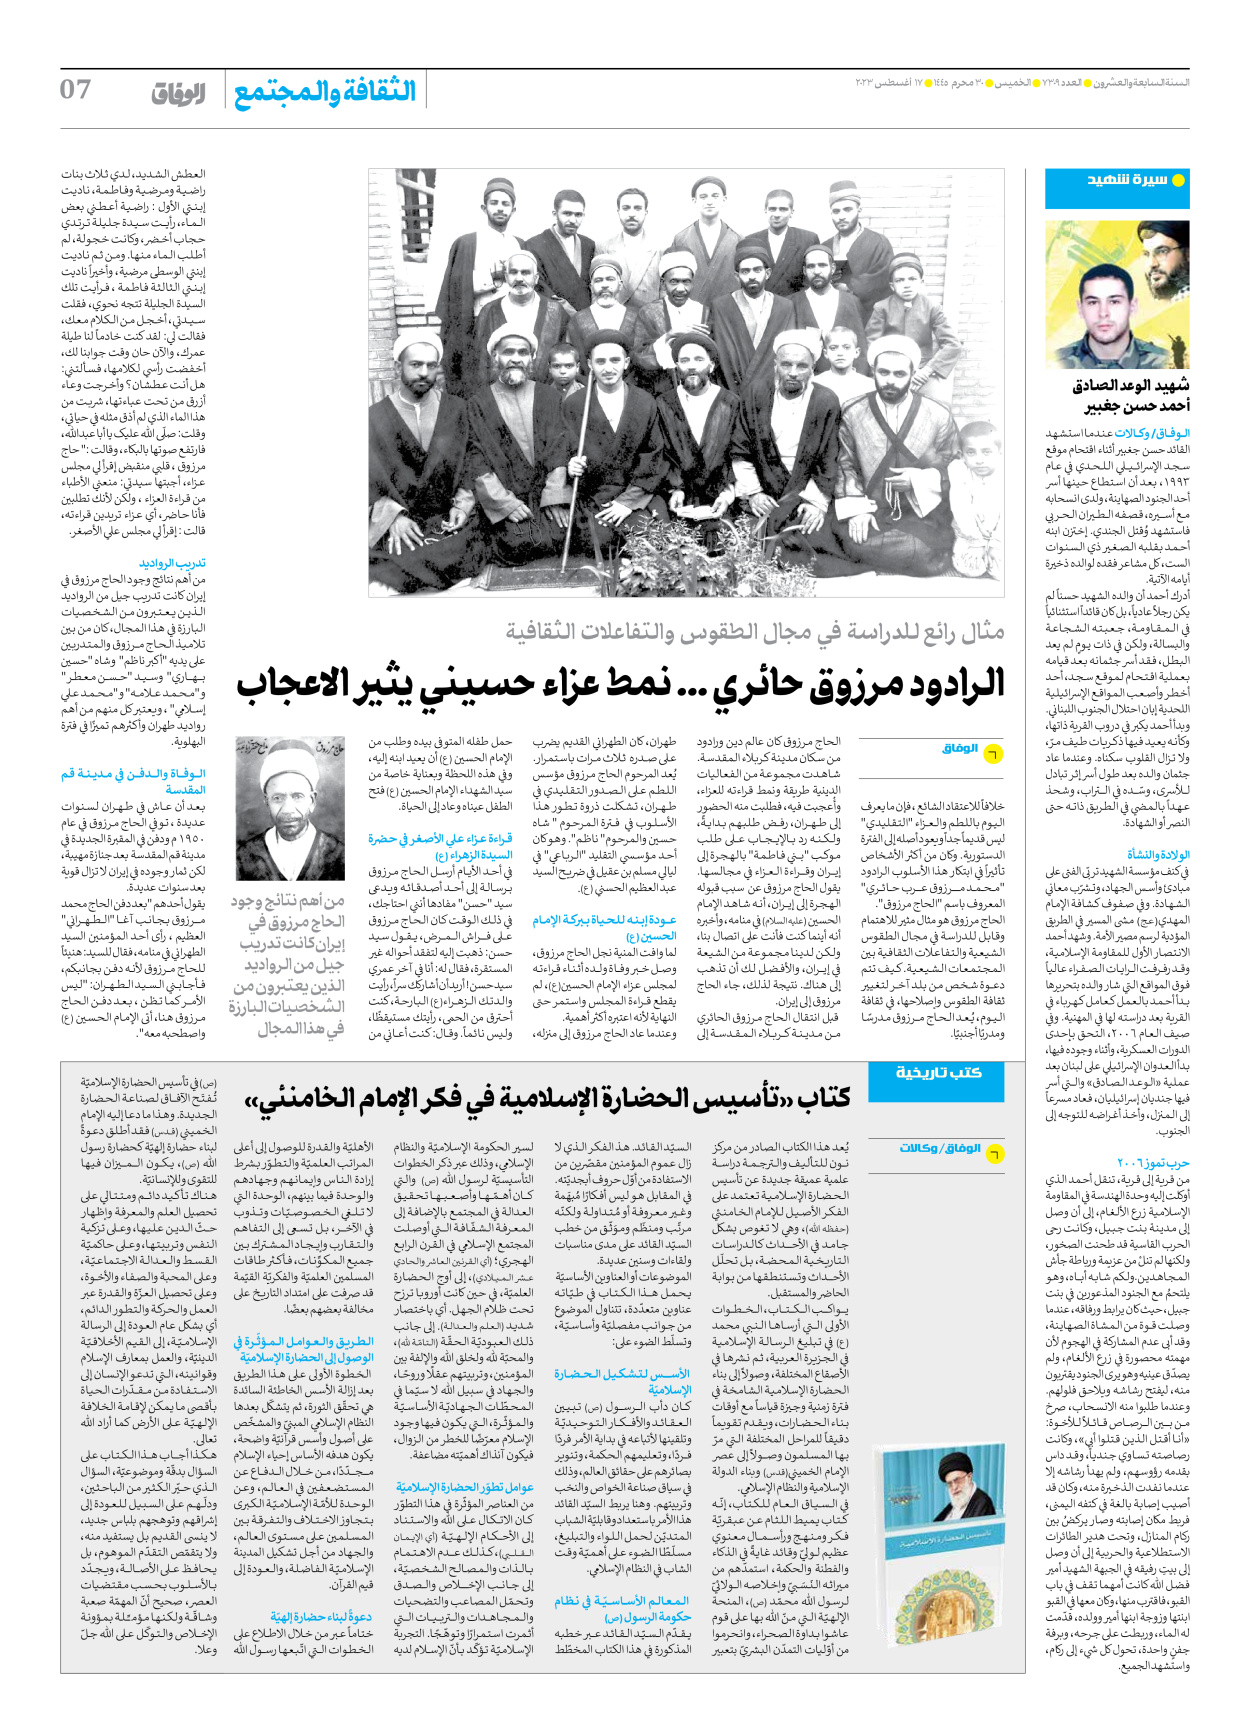 صحیفة ایران الدولیة الوفاق - العدد سبعة آلاف وثلاثمائة وتسعة - ١٧ أغسطس ٢٠٢٣ - الصفحة ۷